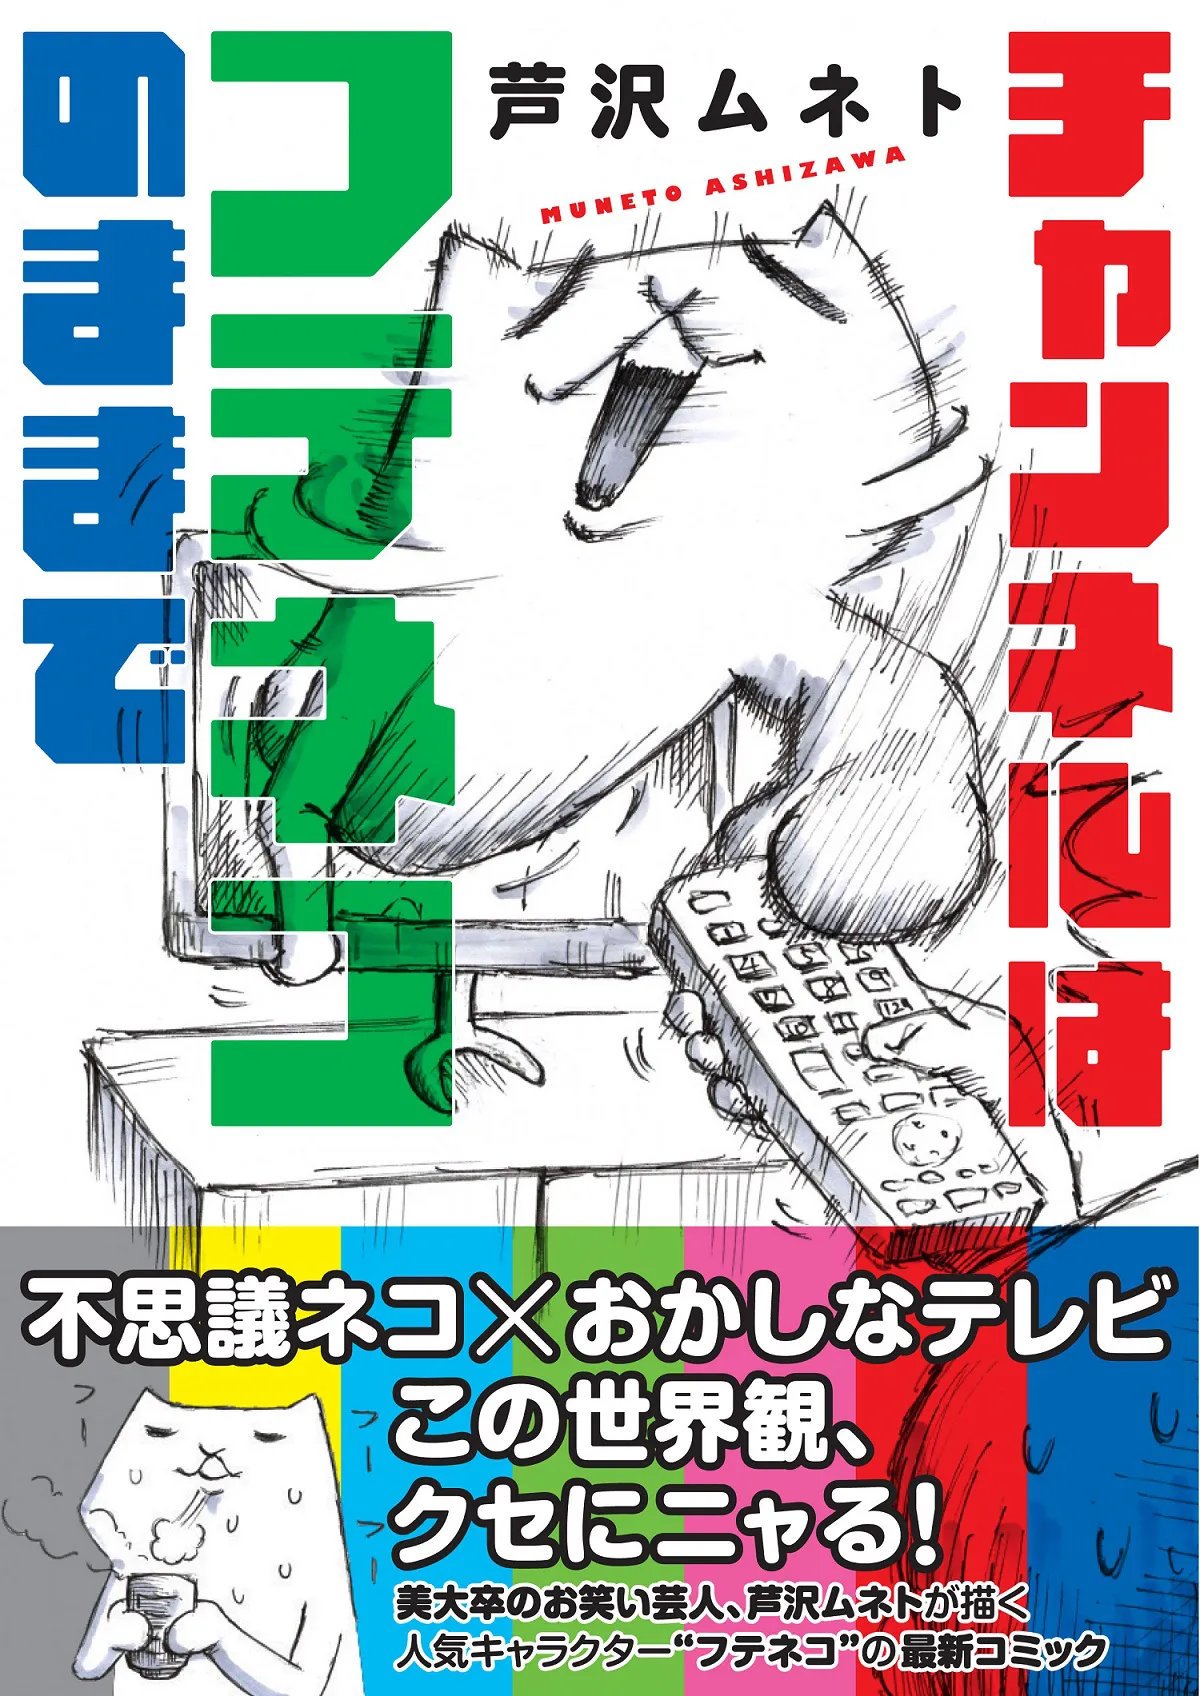 芦沢ムネトが描くネコキャラクター“フテネコ”のマンガ「チャンネルはフテネコのままで」が発売！